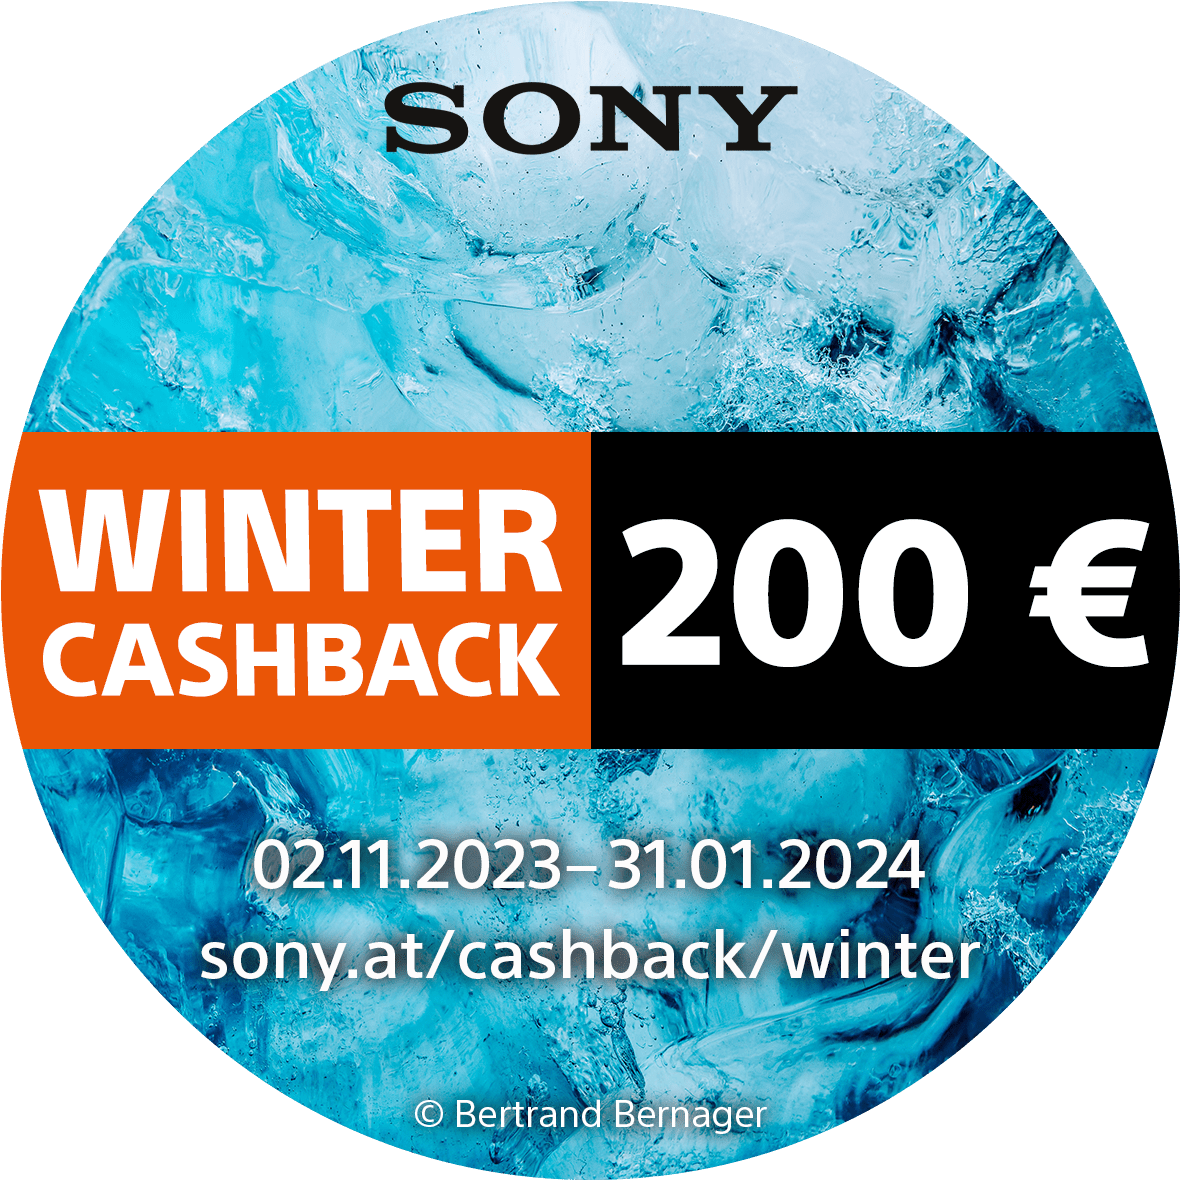 Sony_Winter_Cashback_02112023_bis_31012024_200